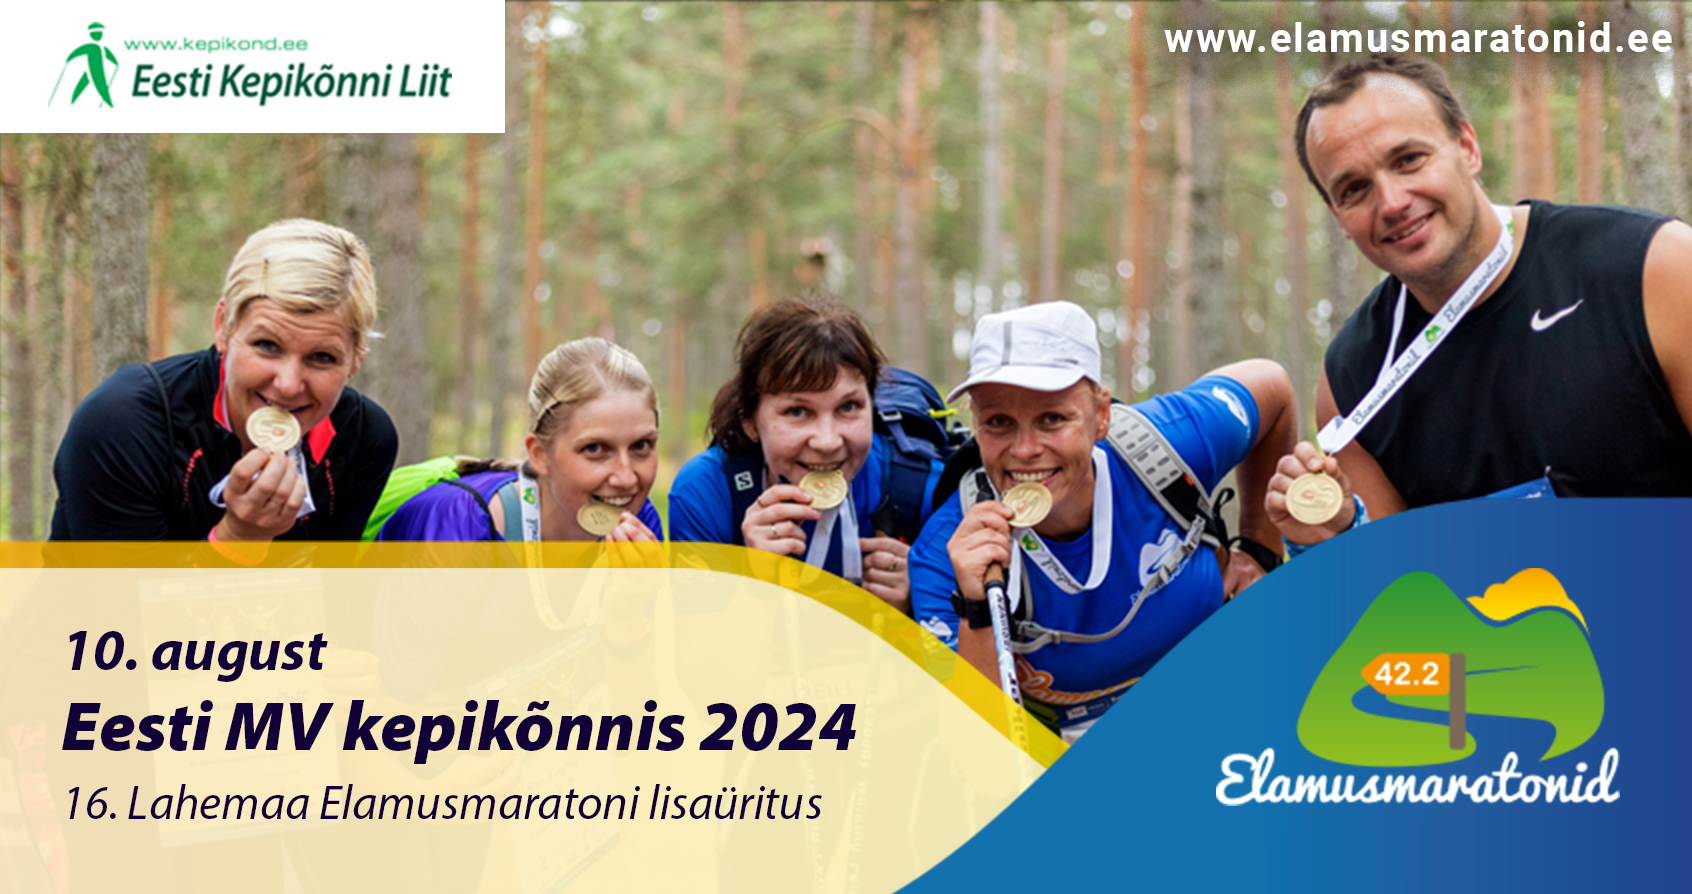 Eesti meistrivõistlused kepikõnnis toimuvad 10. augustil Kolgaküla terviserajal